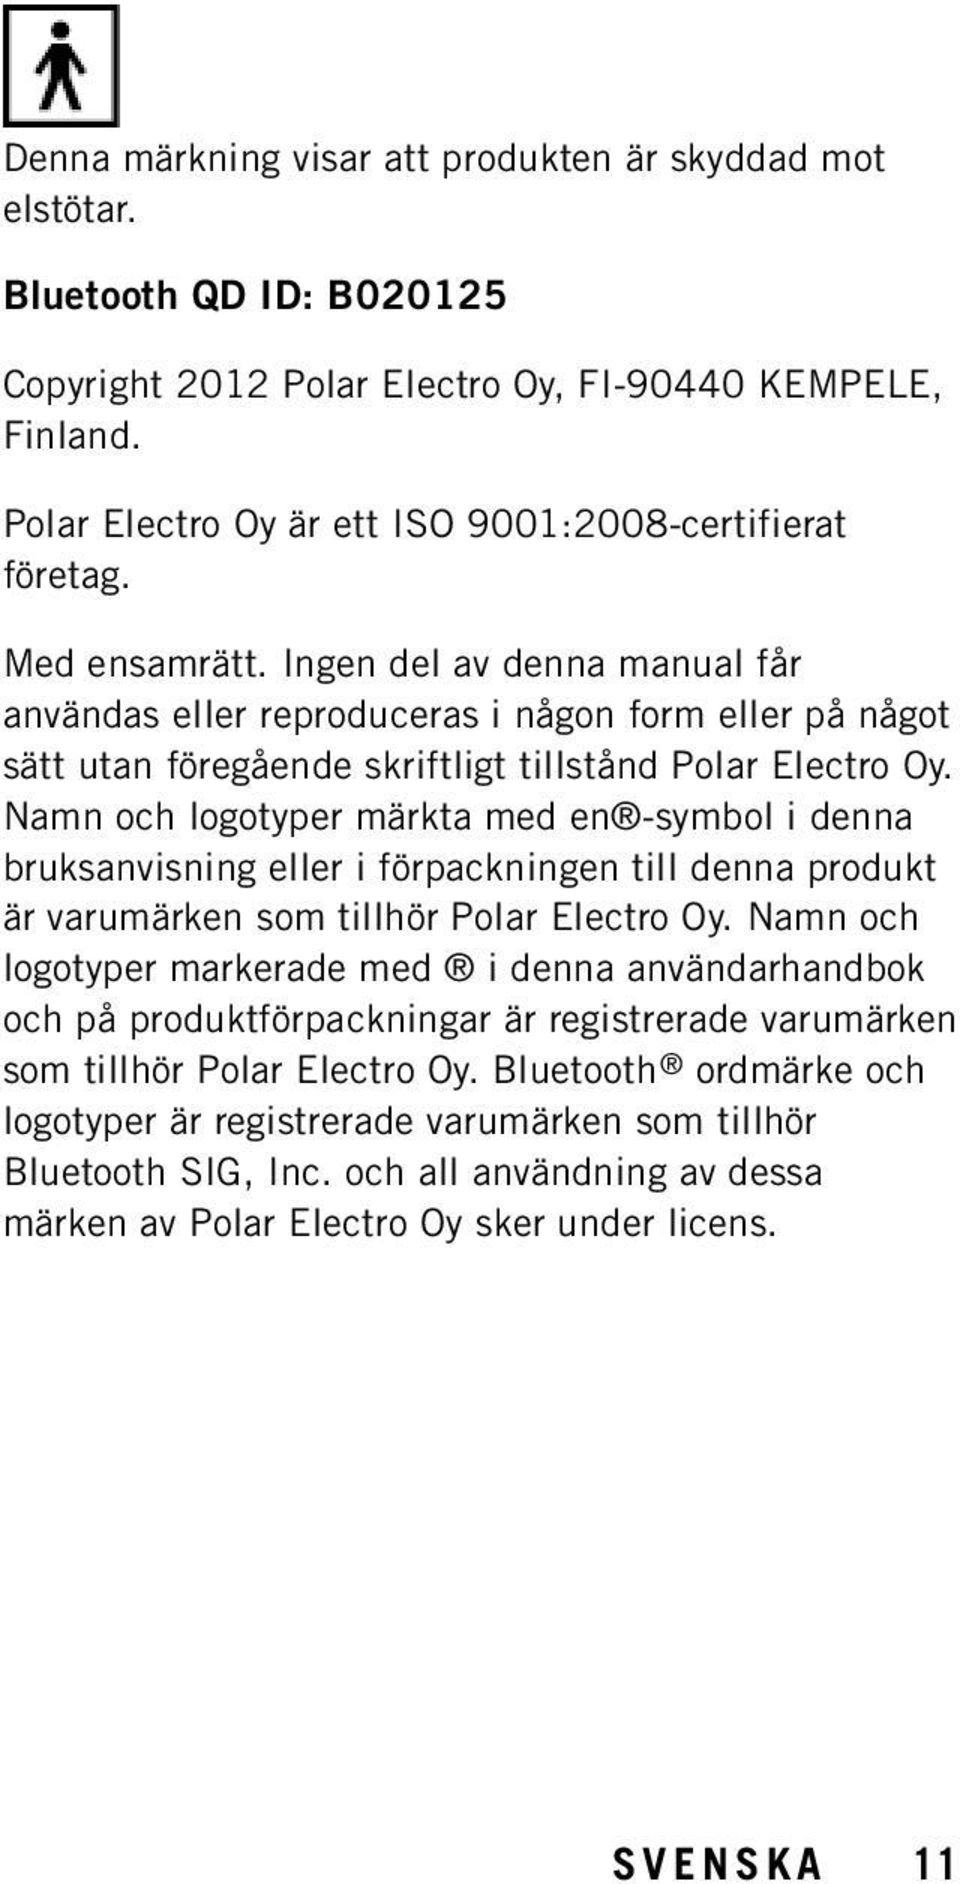 Ingen del av denna manual får användas eller reproduceras i någon form eller på något sätt utan föregående skriftligt tillstånd Polar Electro Oy.